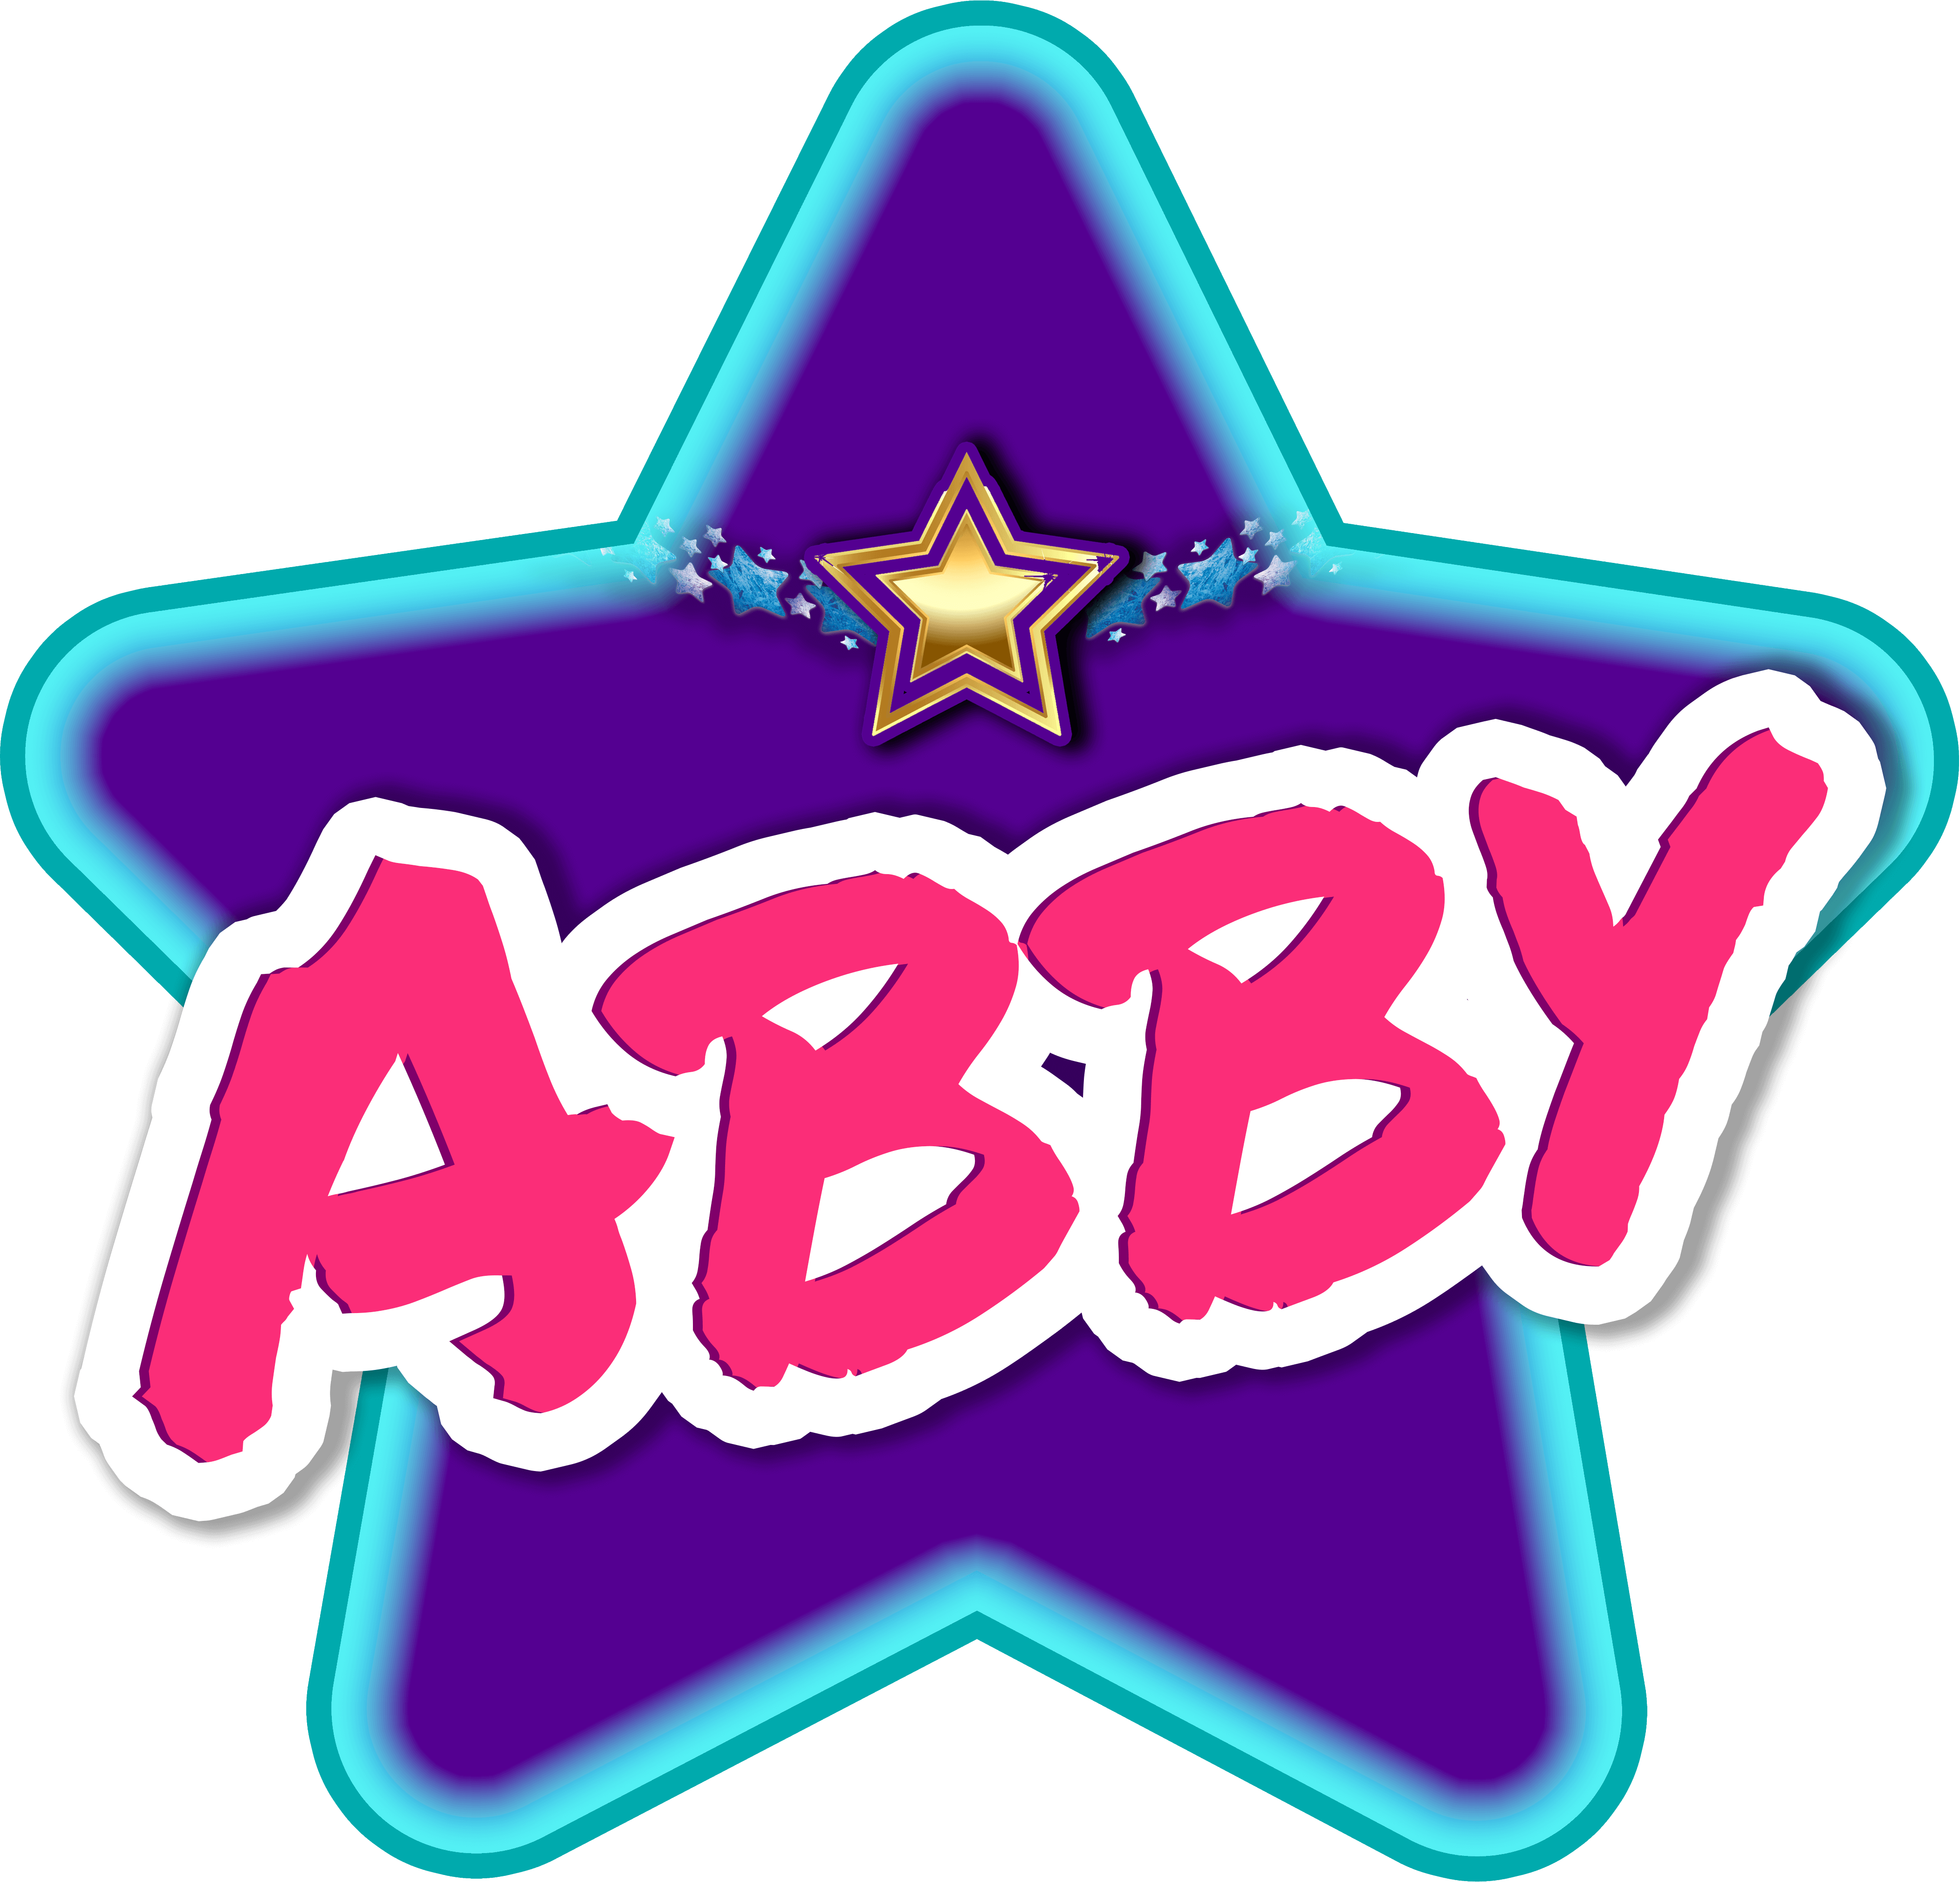 Abby_theStar2020